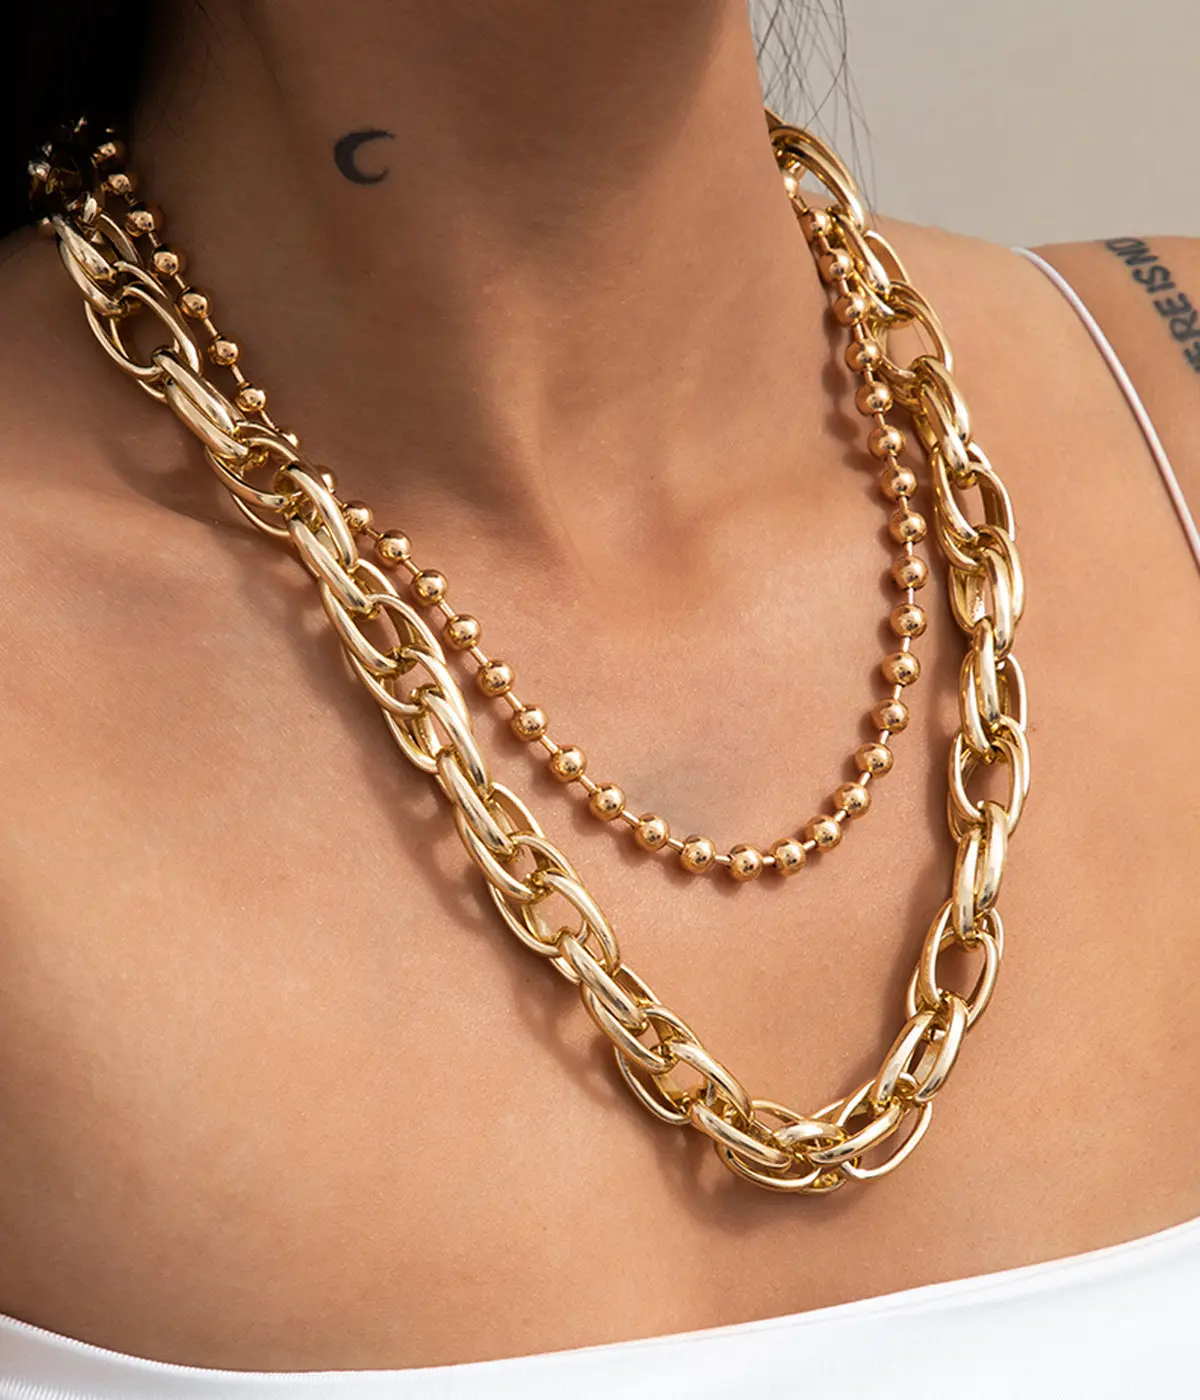 Europäische und amerikanische Mode maßge schneiderte zierliche geschichtete Frauen bling Halskette Gold mehrkettige Halskette